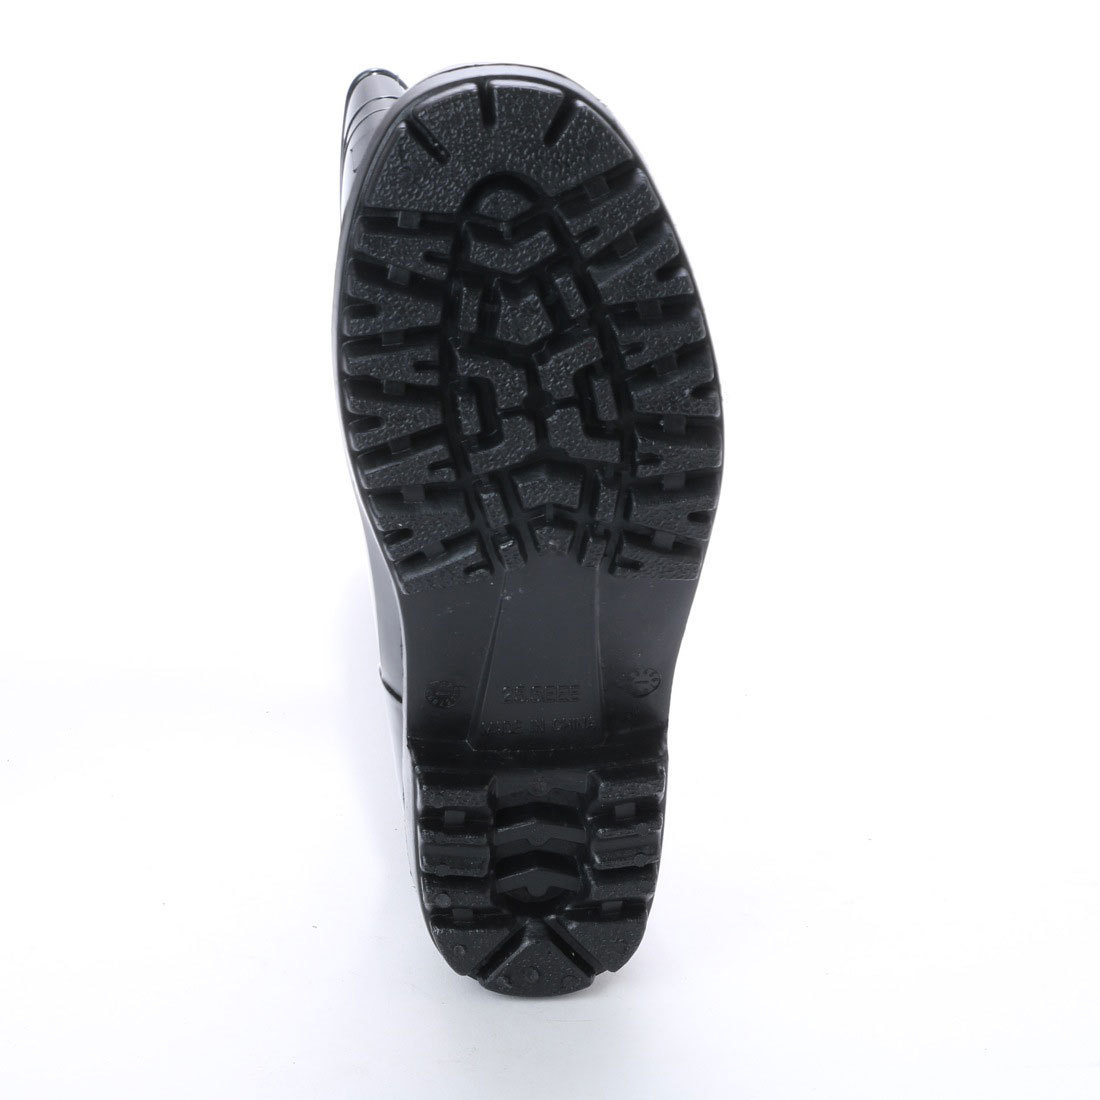  boots men's simple black boots work boots men's rain shoes new goods [16049-BLK-260]26.0cm stock one . sale 